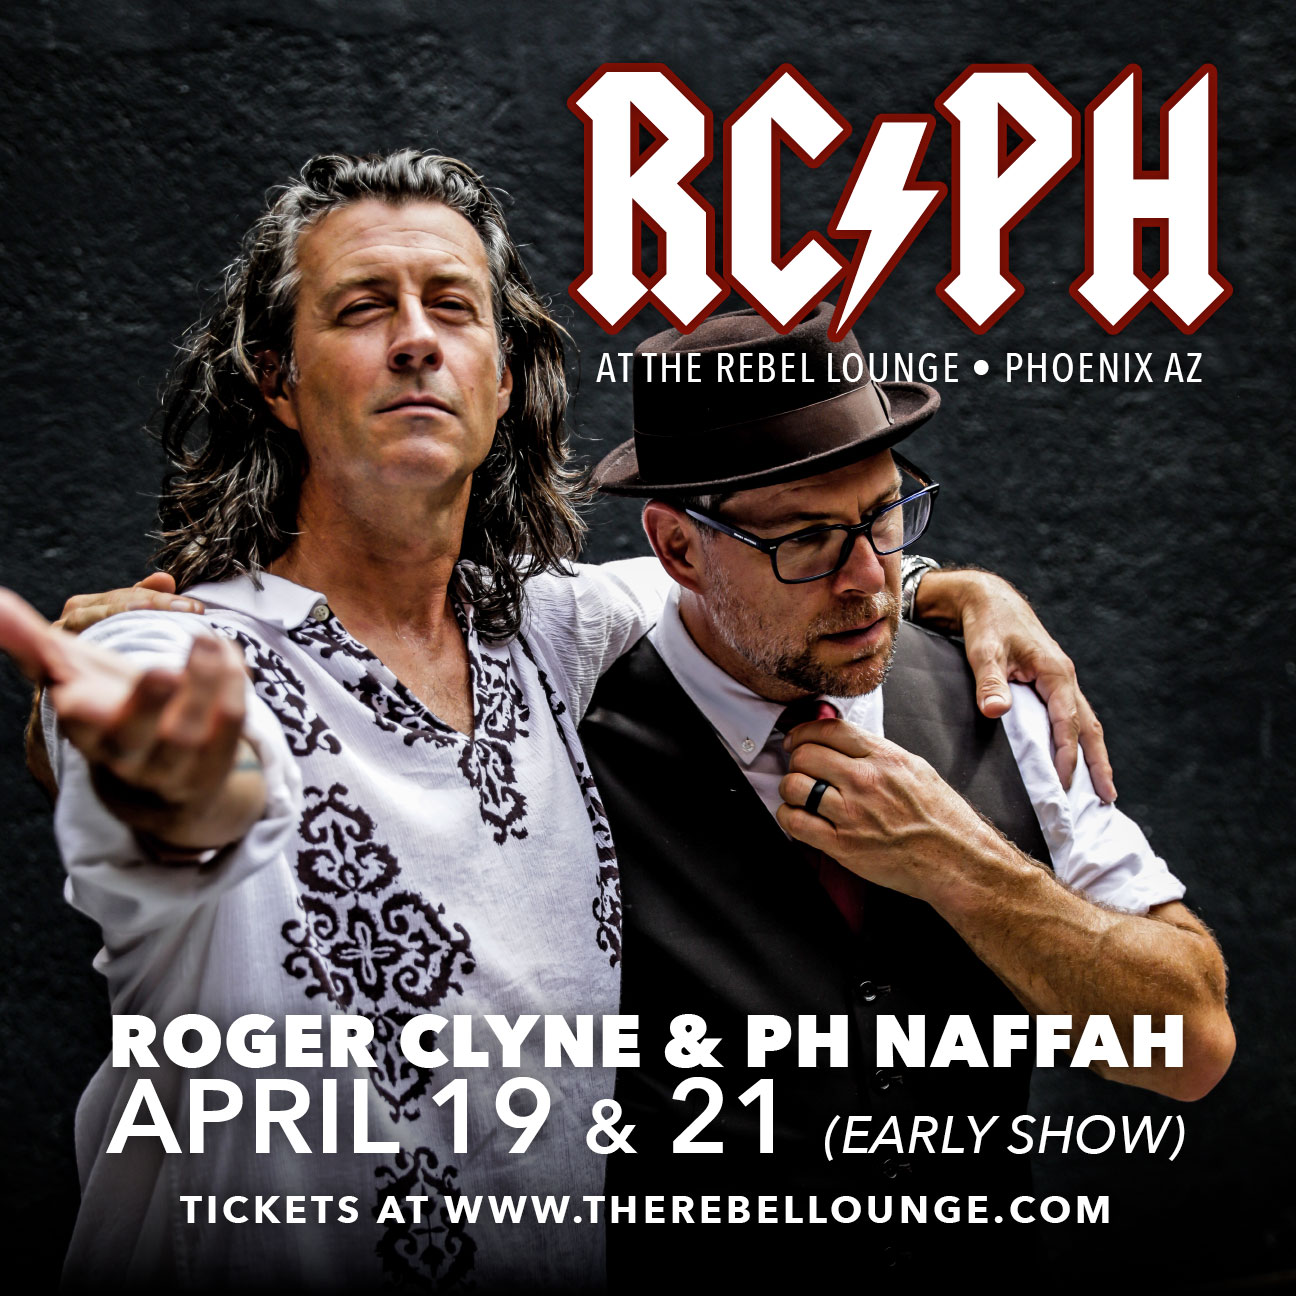 ROGER CLYNE & PH NAFFAH